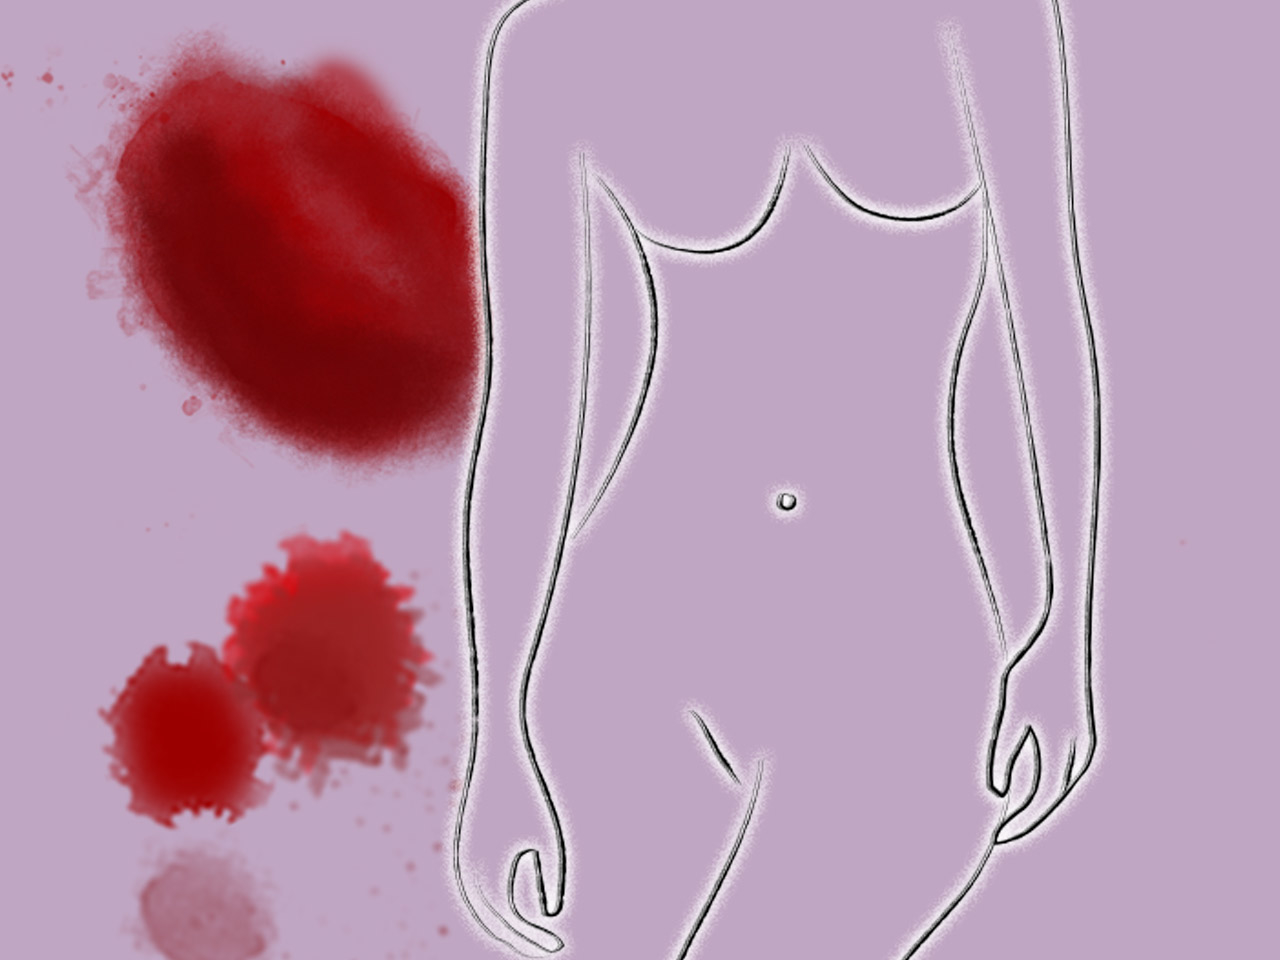 Mit starke klumpen zwischenblutung Menstruationsbeschwerden homöopathisch